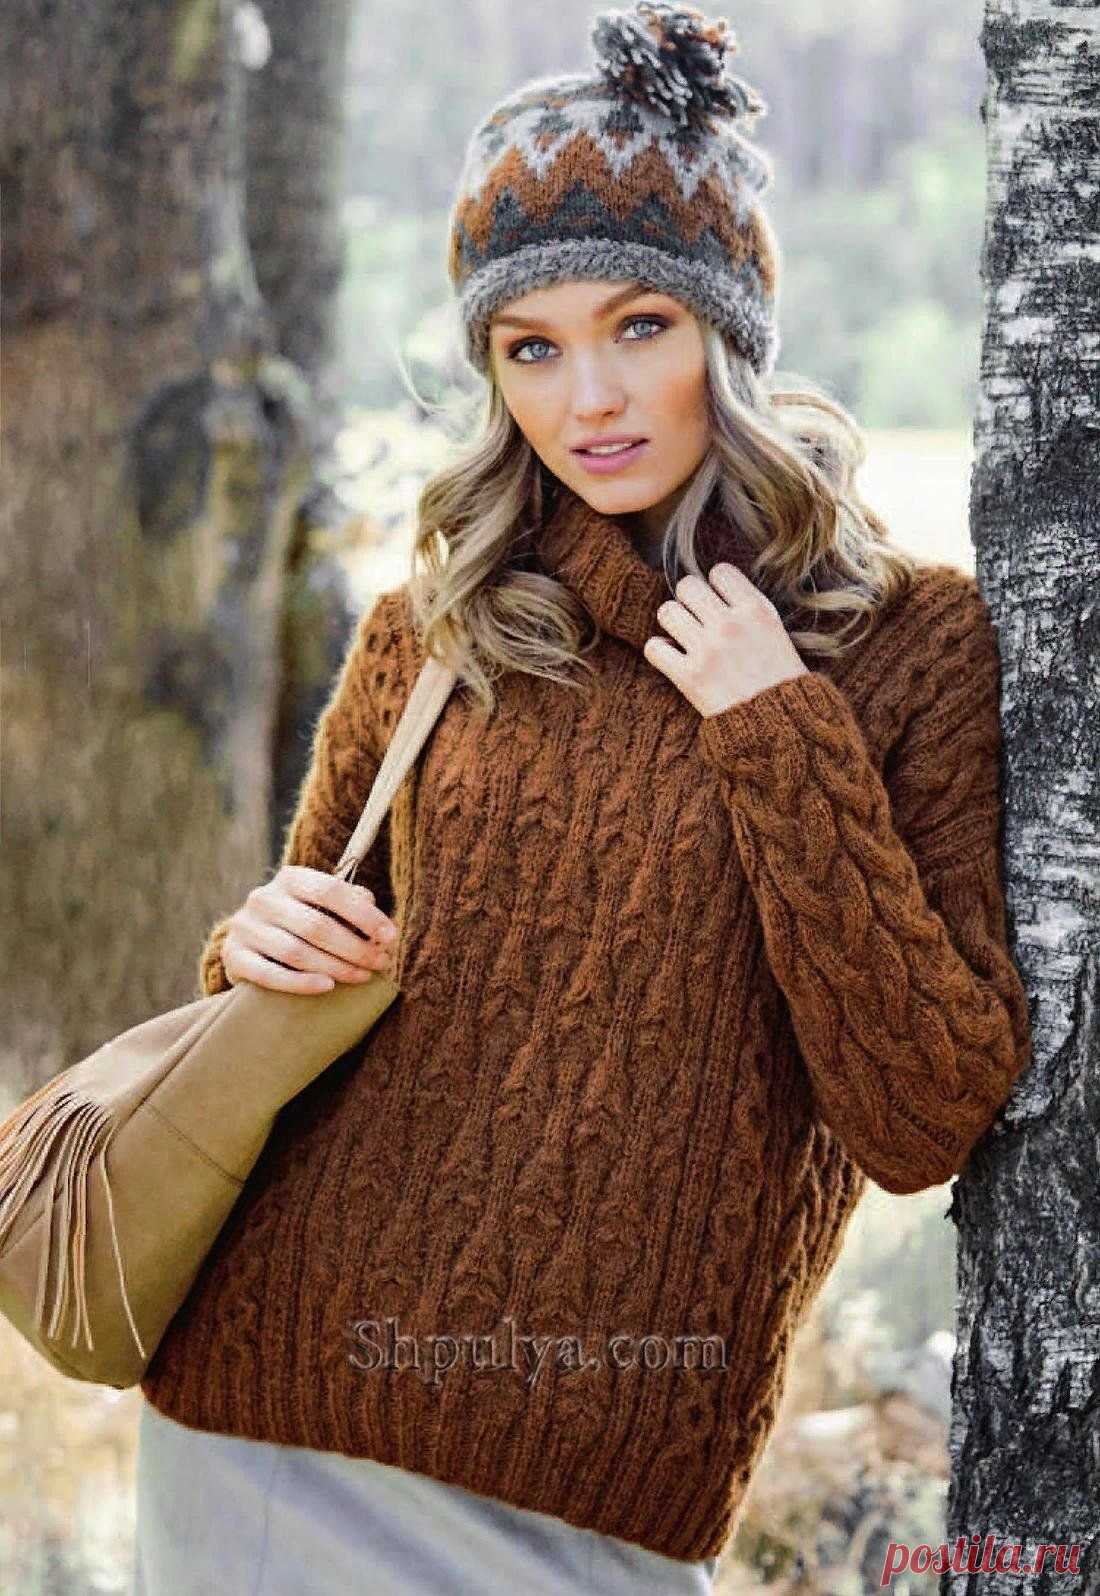 Коричневый свитер и шапка с жаккардовым узором Описание вязания свитера и шапки жаккардом